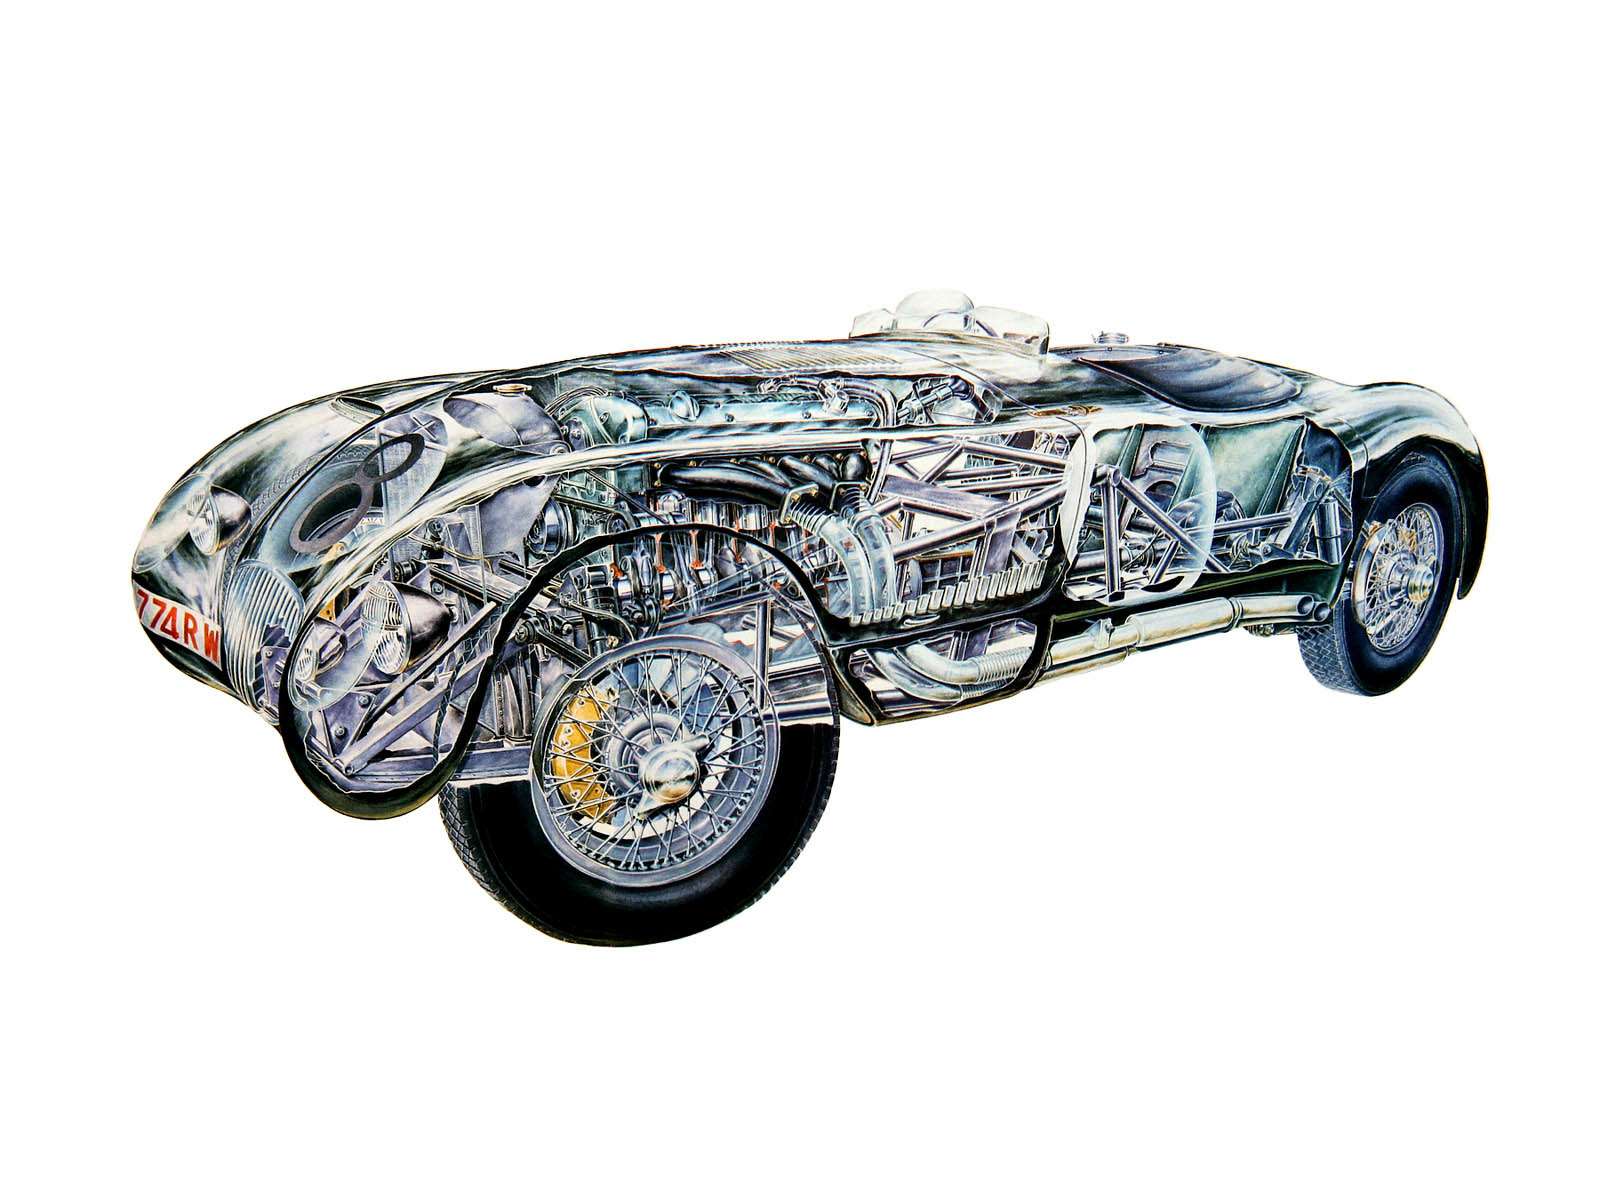 Интересно, что дисковые тормозные механизмы, которые сегодня используются на подавляющем большинстве легковых автомобилей, были запатентованы в том же 1902 году Уильямом Ланчестером. Однако широкого применения они тогда не получили. Первым автомобилем, где успешно применили рабочие дисковые тормозные механизмы, стал гоночный Jaguar C-Type 1951 года.